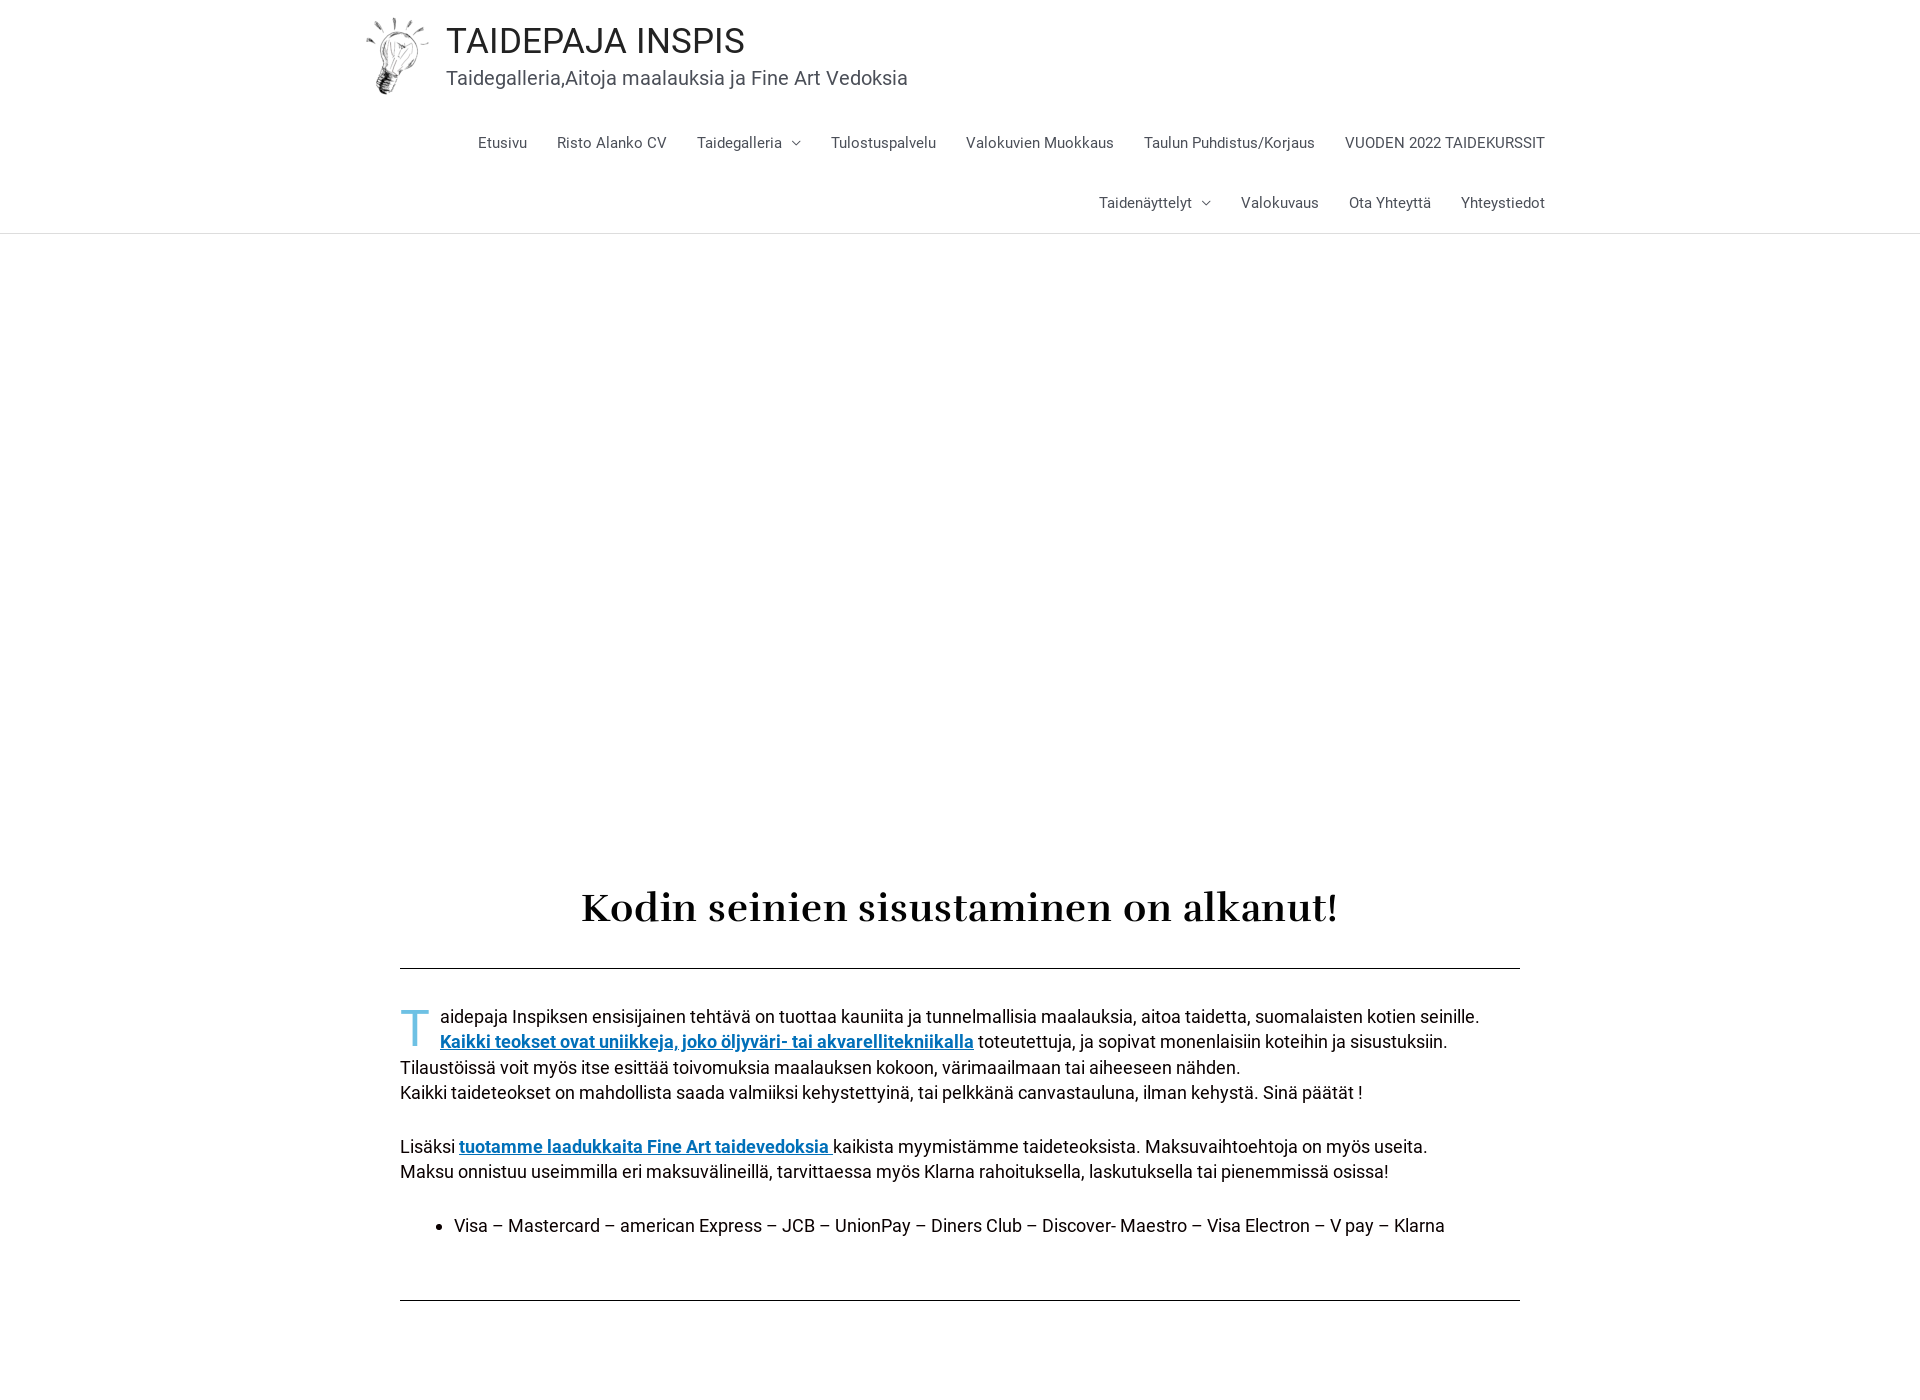 Screenshot for ristoalanko.fi